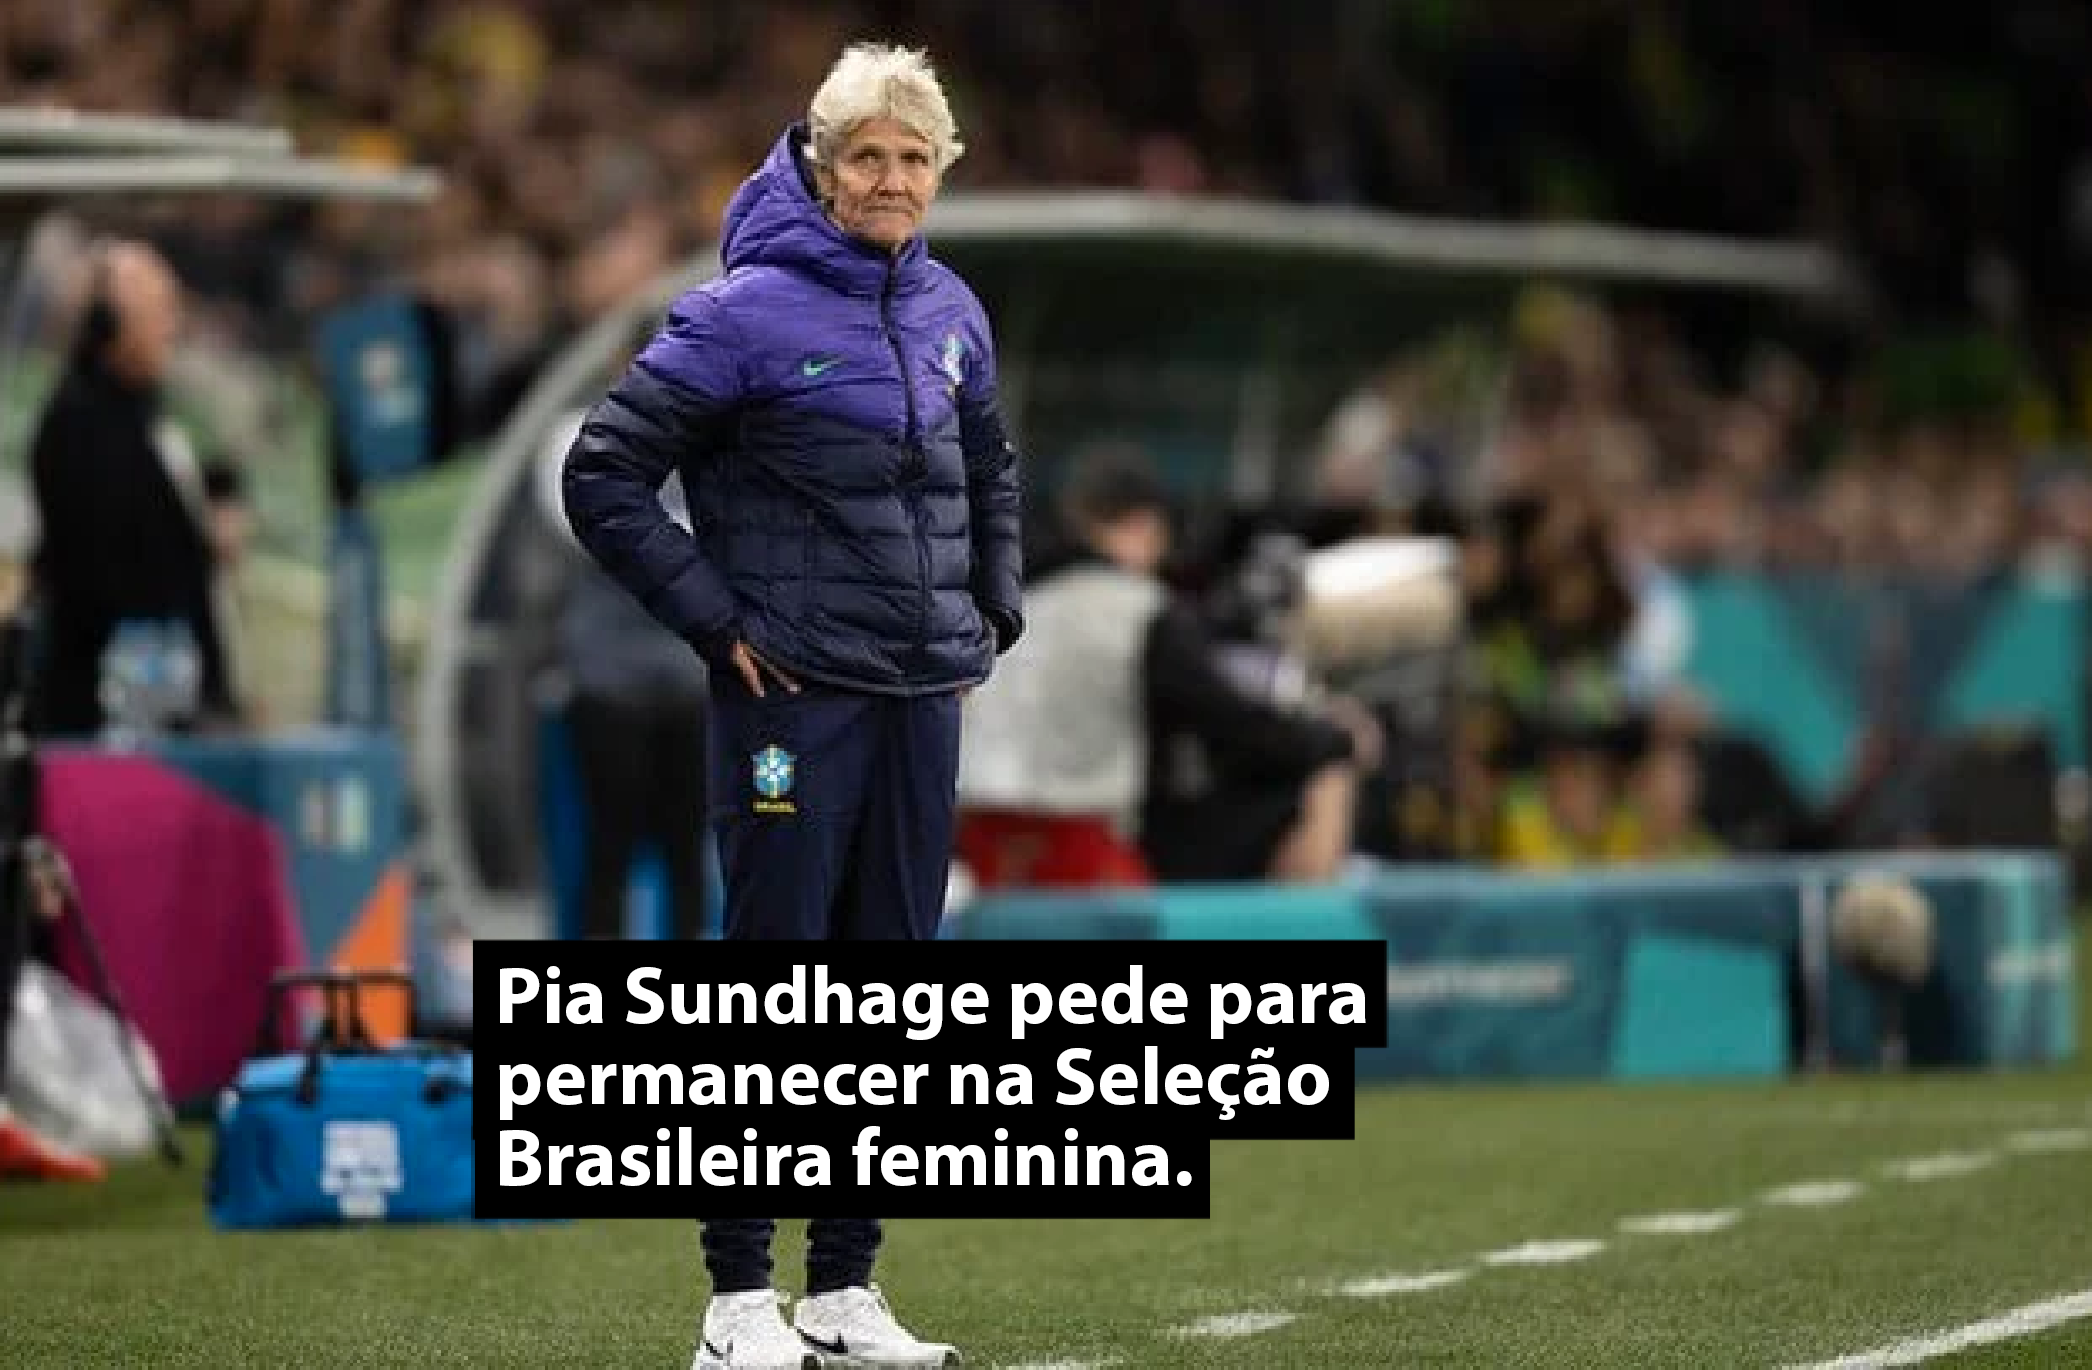 Pia Sundhage pede para permanecer na Seleção Brasileira feminina.